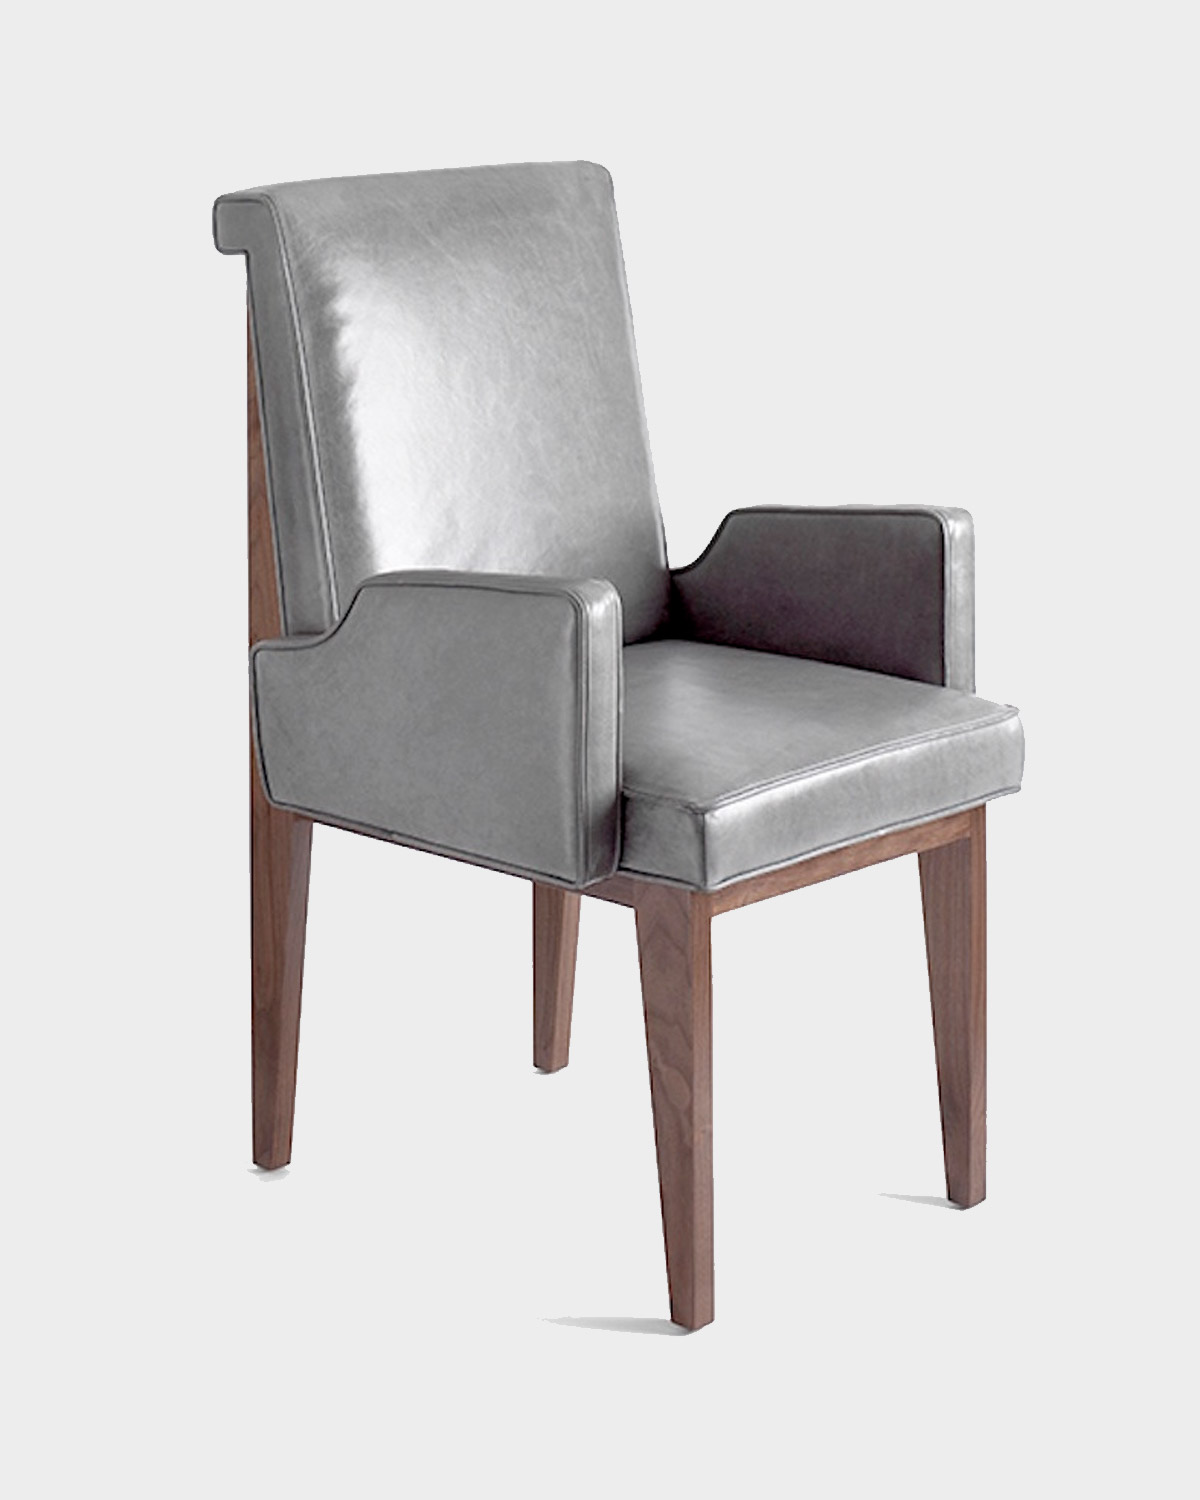 The Barnett Arm Dining Chair by Studio Van den Akker